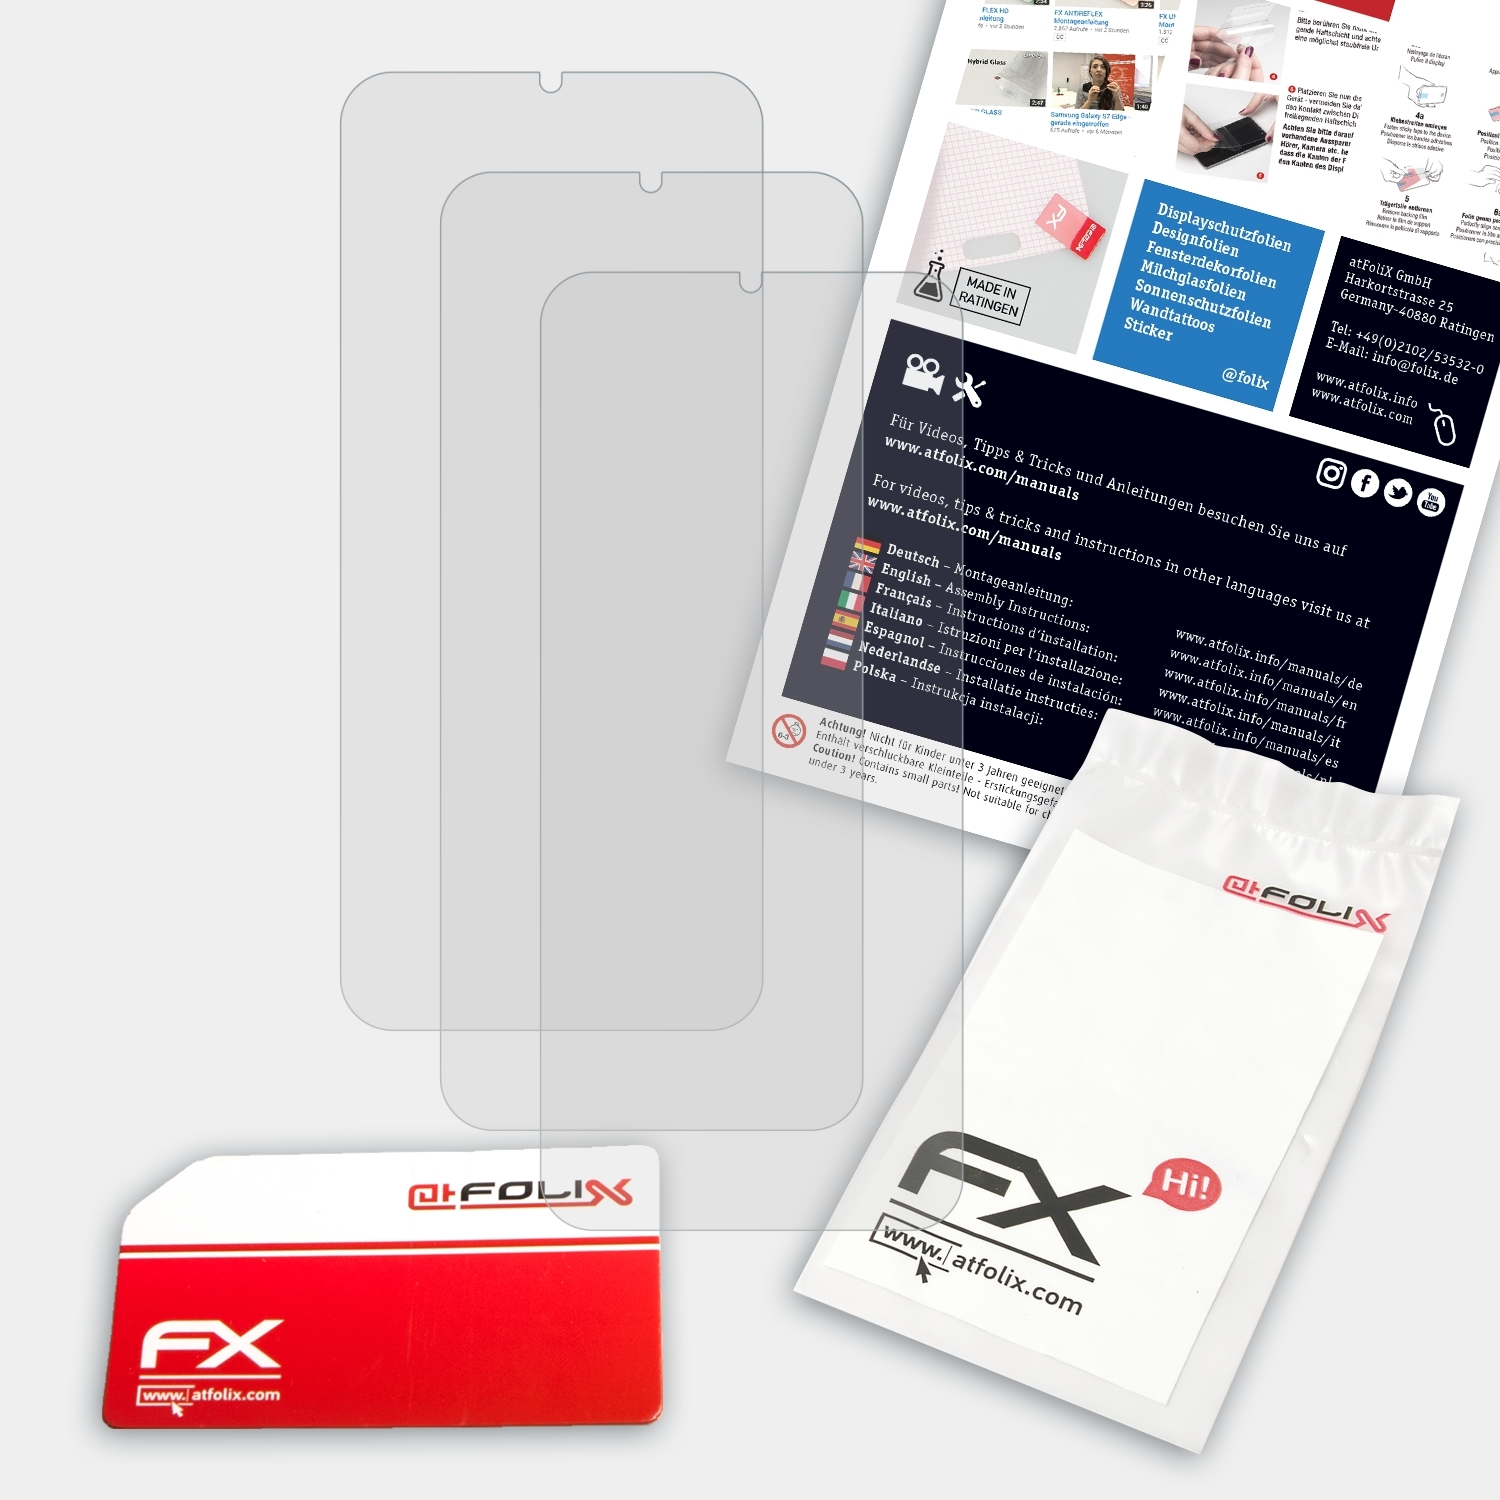 ATFOLIX 3x (2019)) Note Ulefone Displayschutz(für FX-Antireflex 7